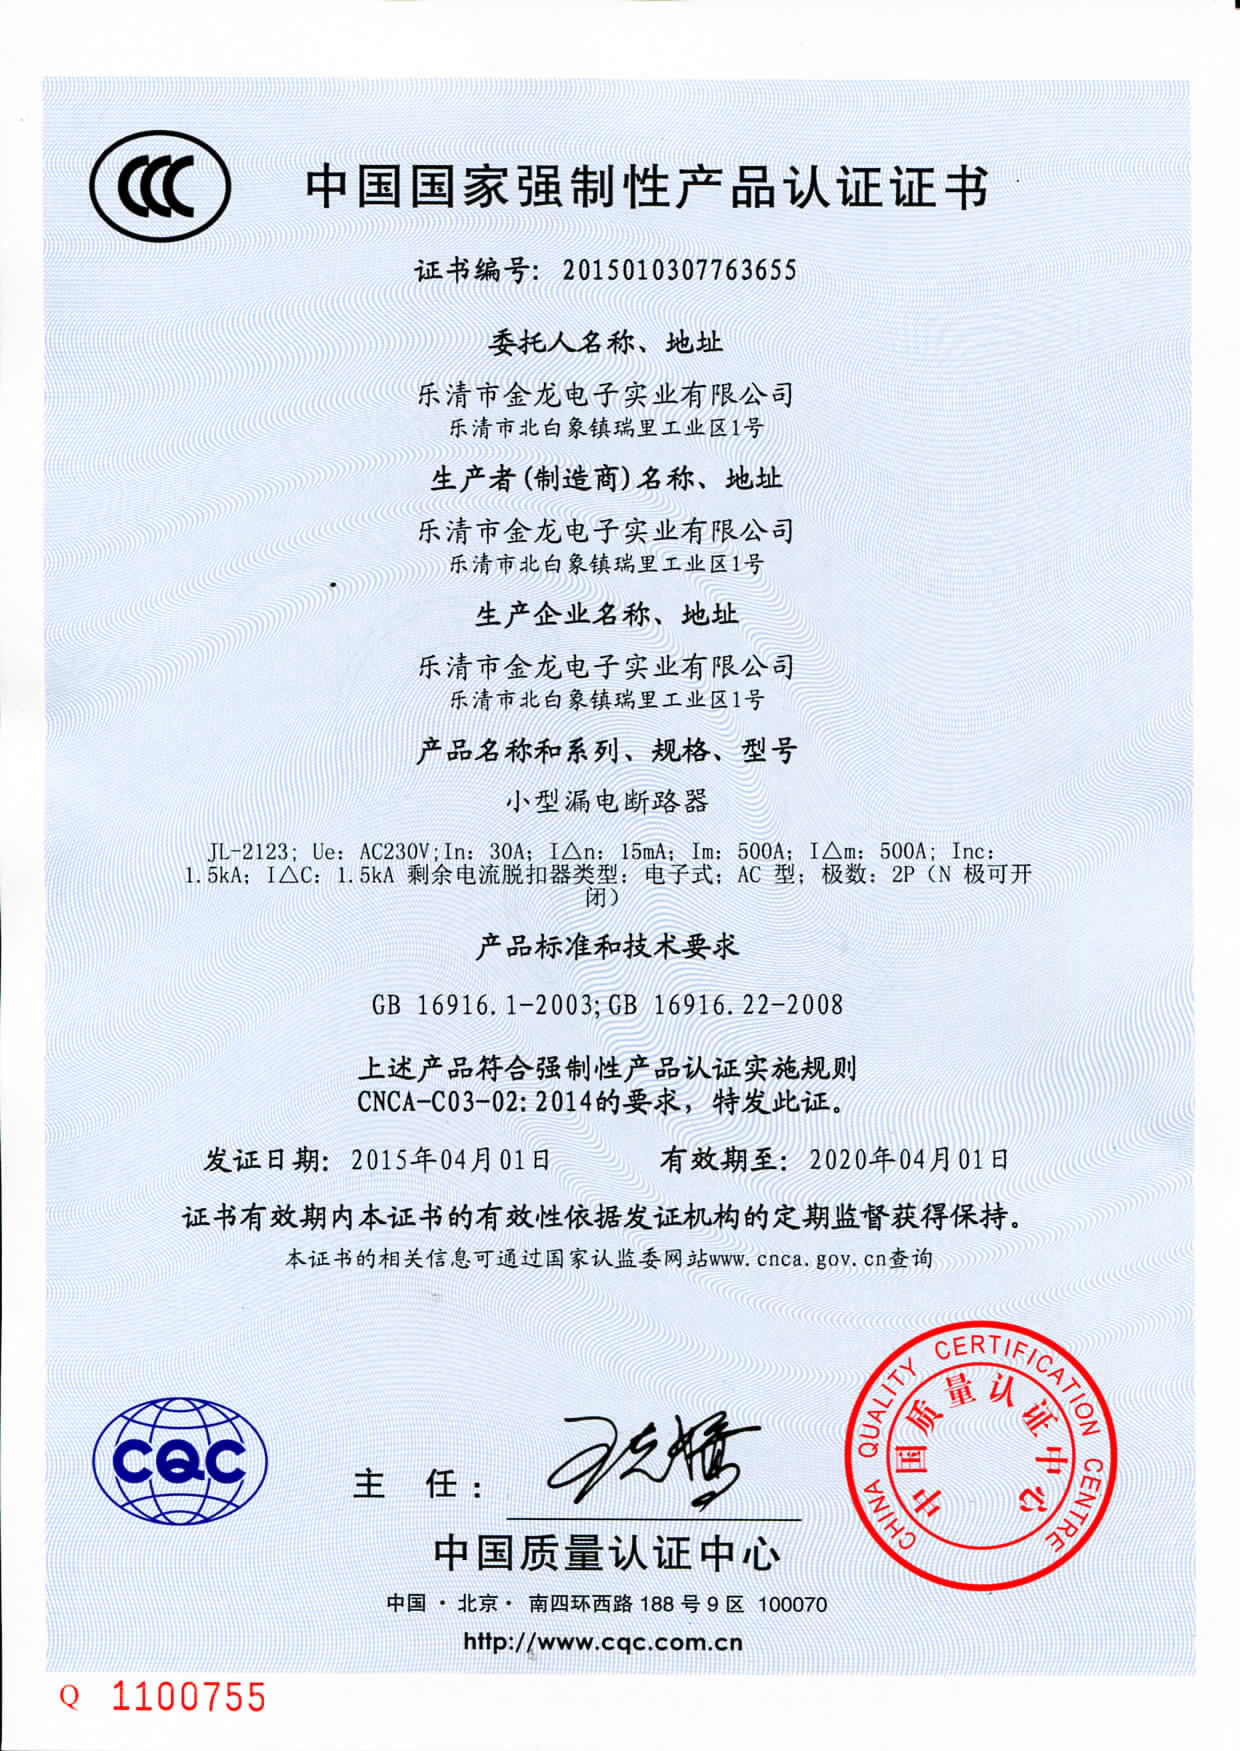 皇冠手机官方网站-(中国)股份有限公司官网3C证书